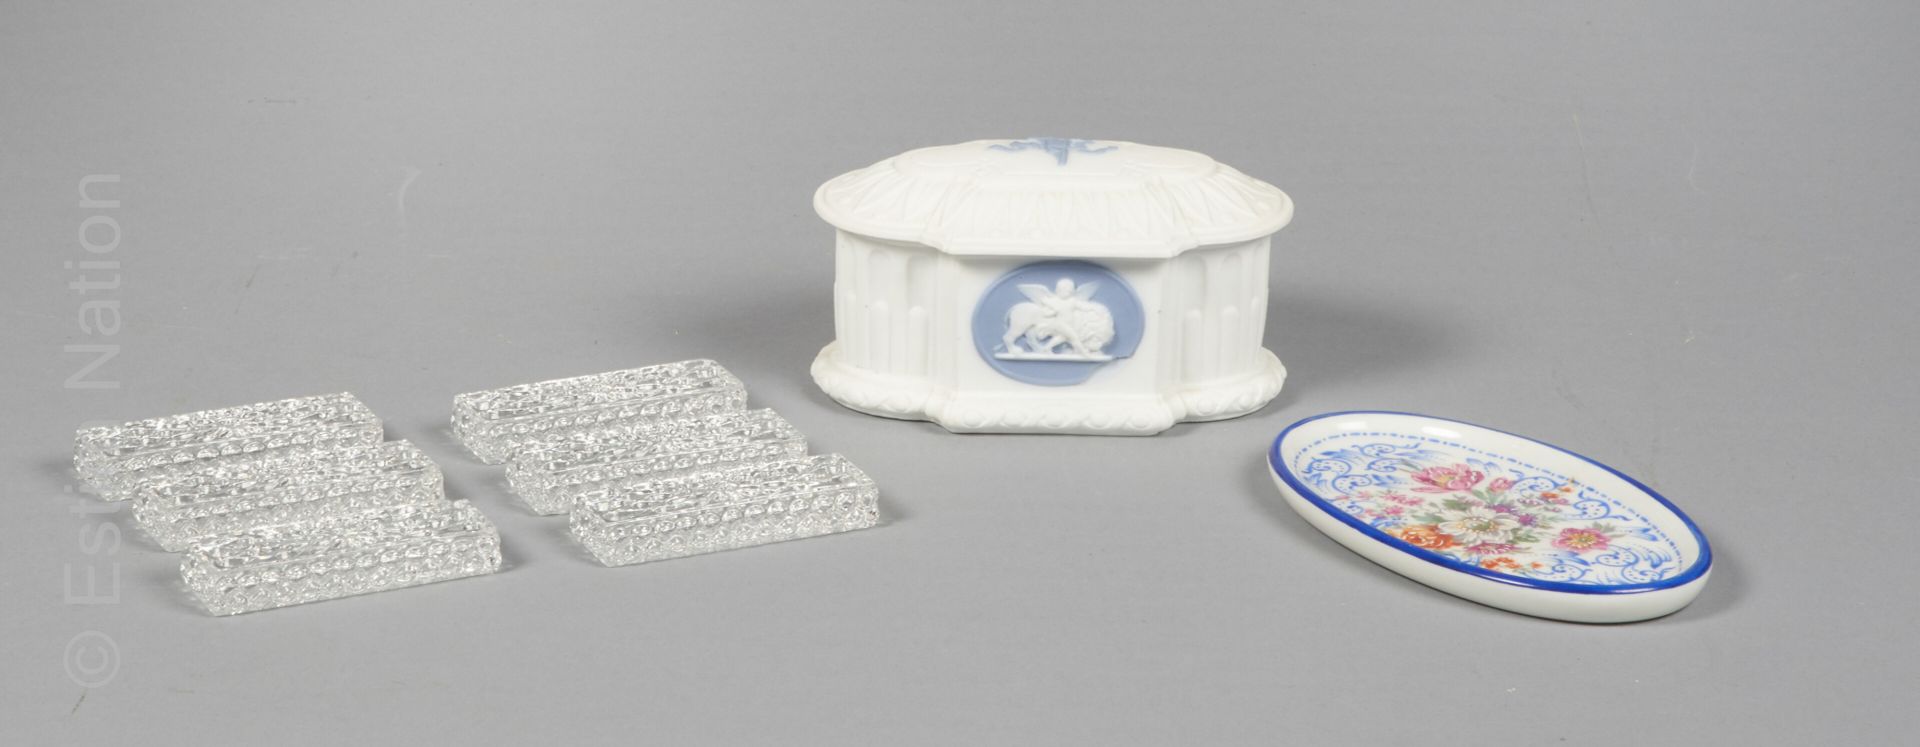 DIVERS - BACCARAT 6 portacuchillos de cristal, firmados

- Caja de porcelana con&hellip;